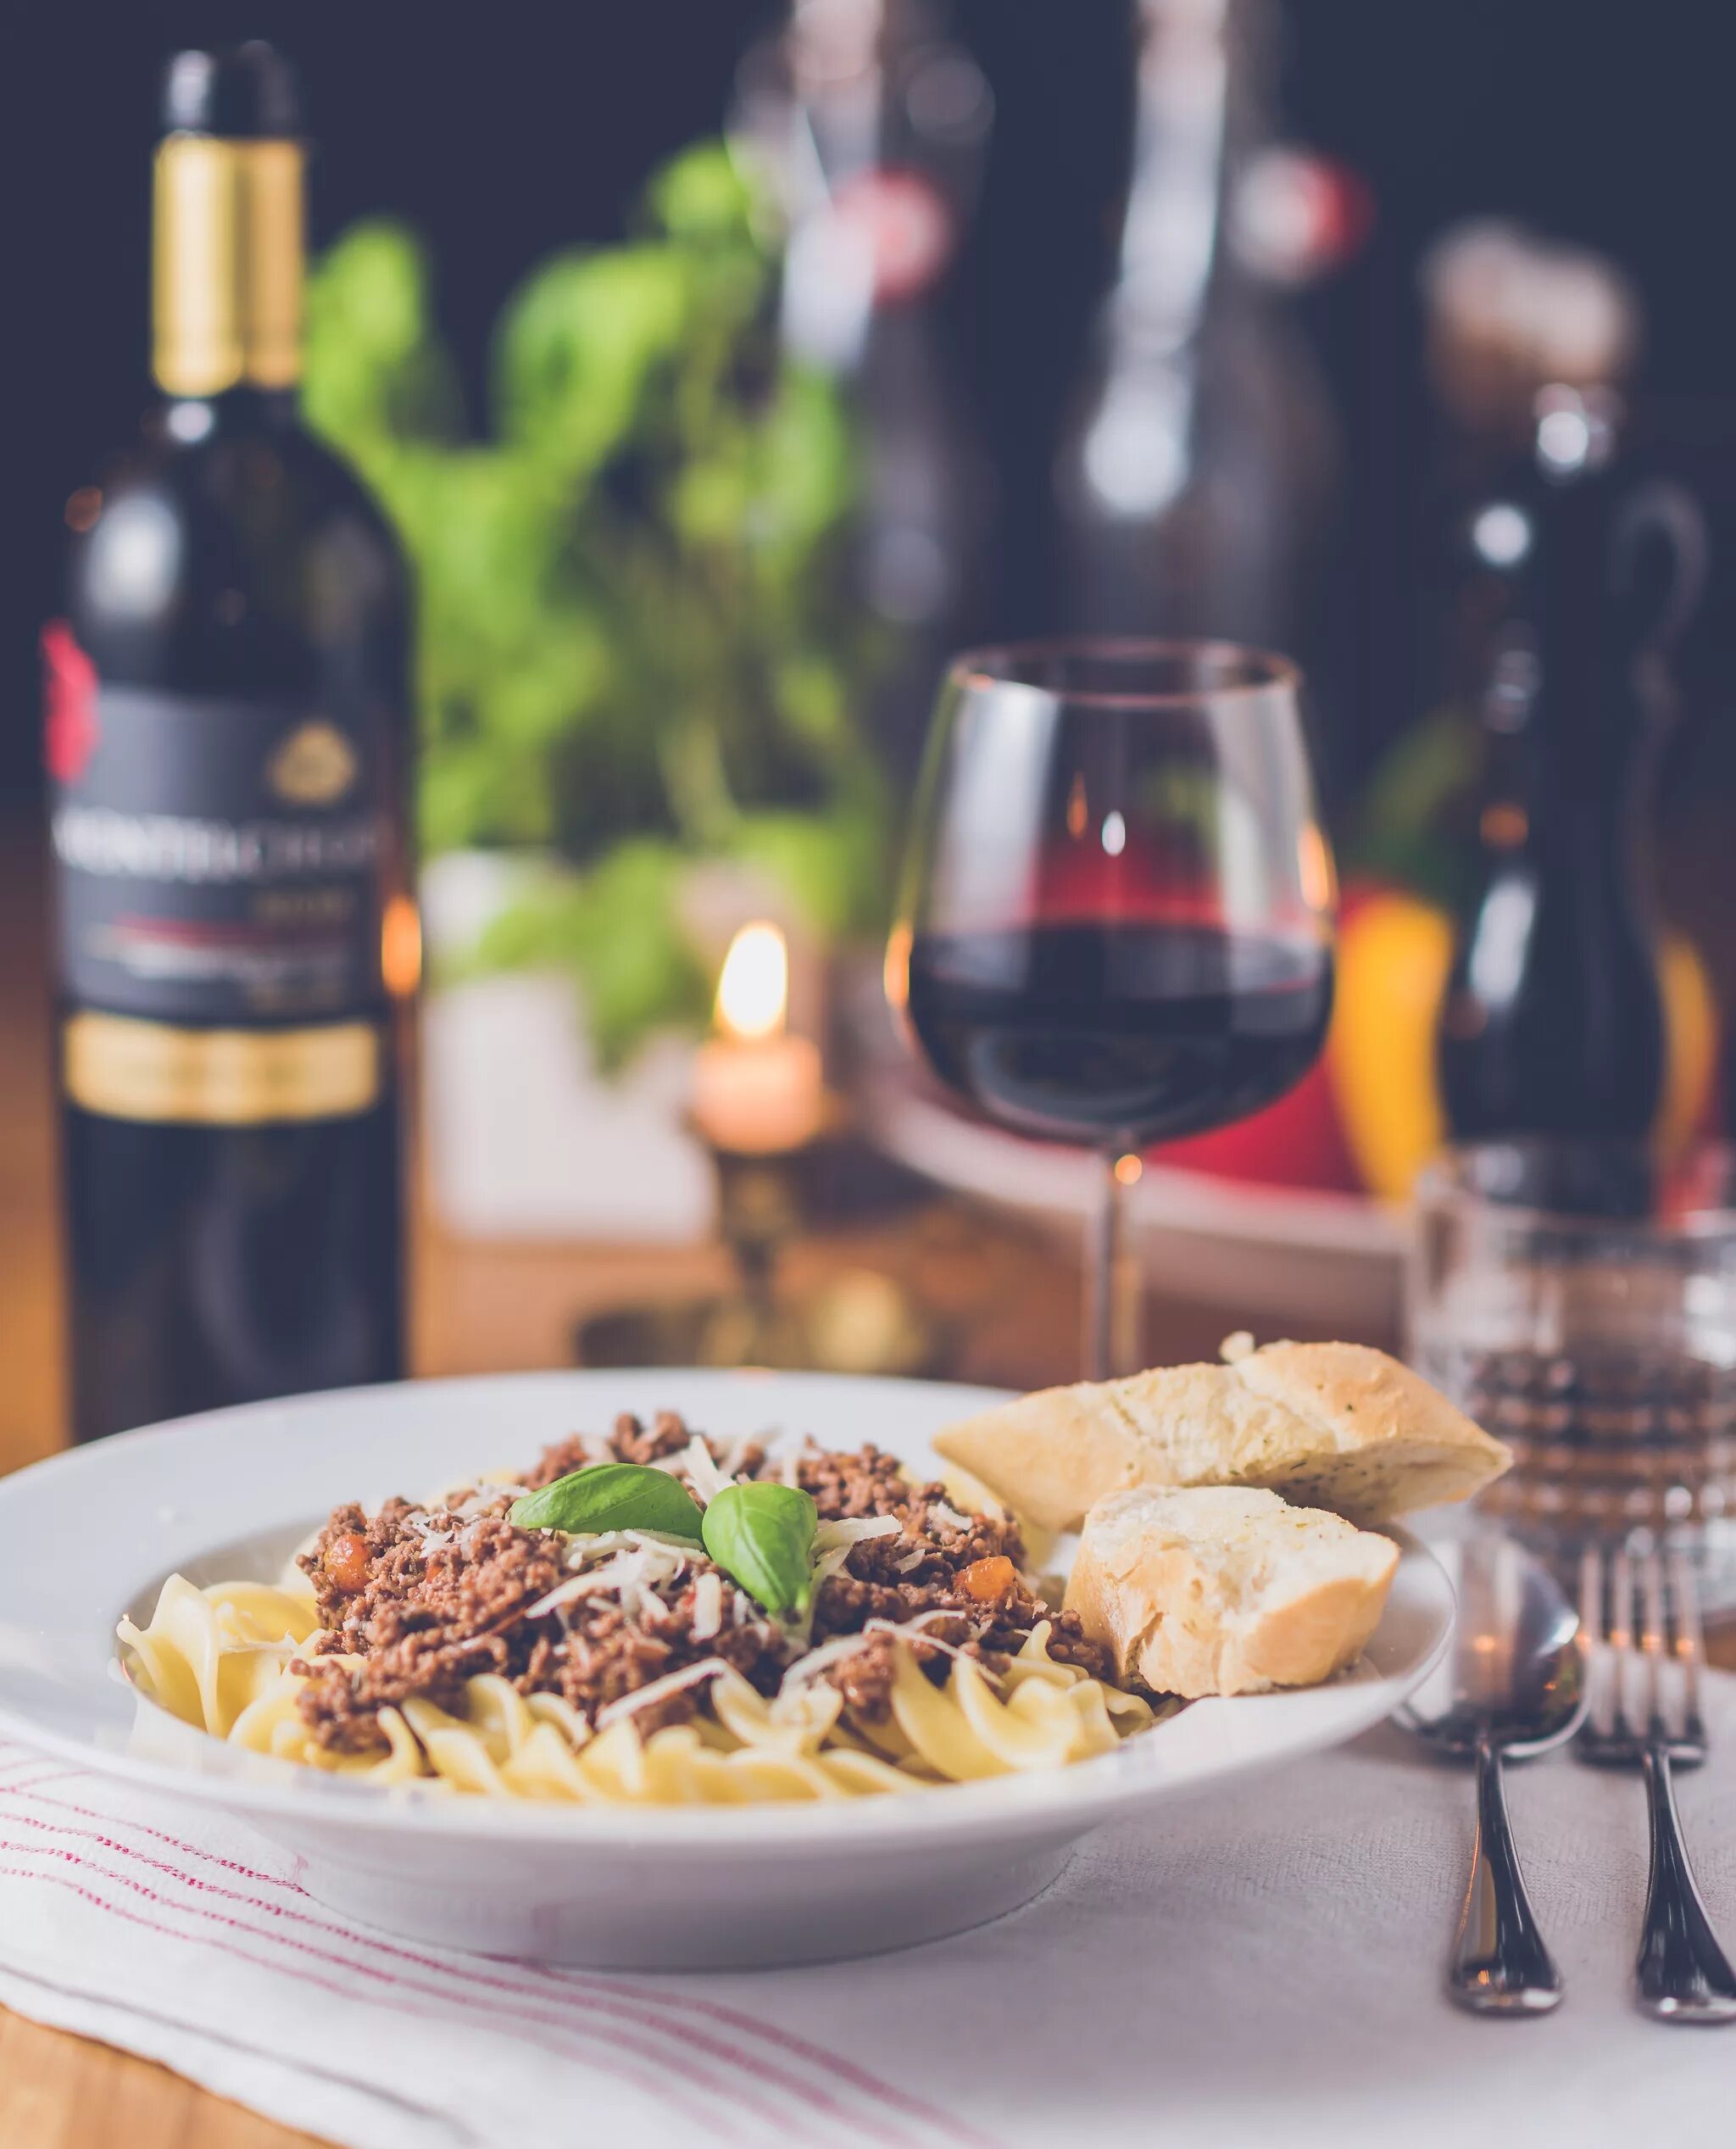 Ужин к вину. Ужин с вином. Итальянская кухня вино. Итальянская еда и вино. Шикарный ужин с вином.